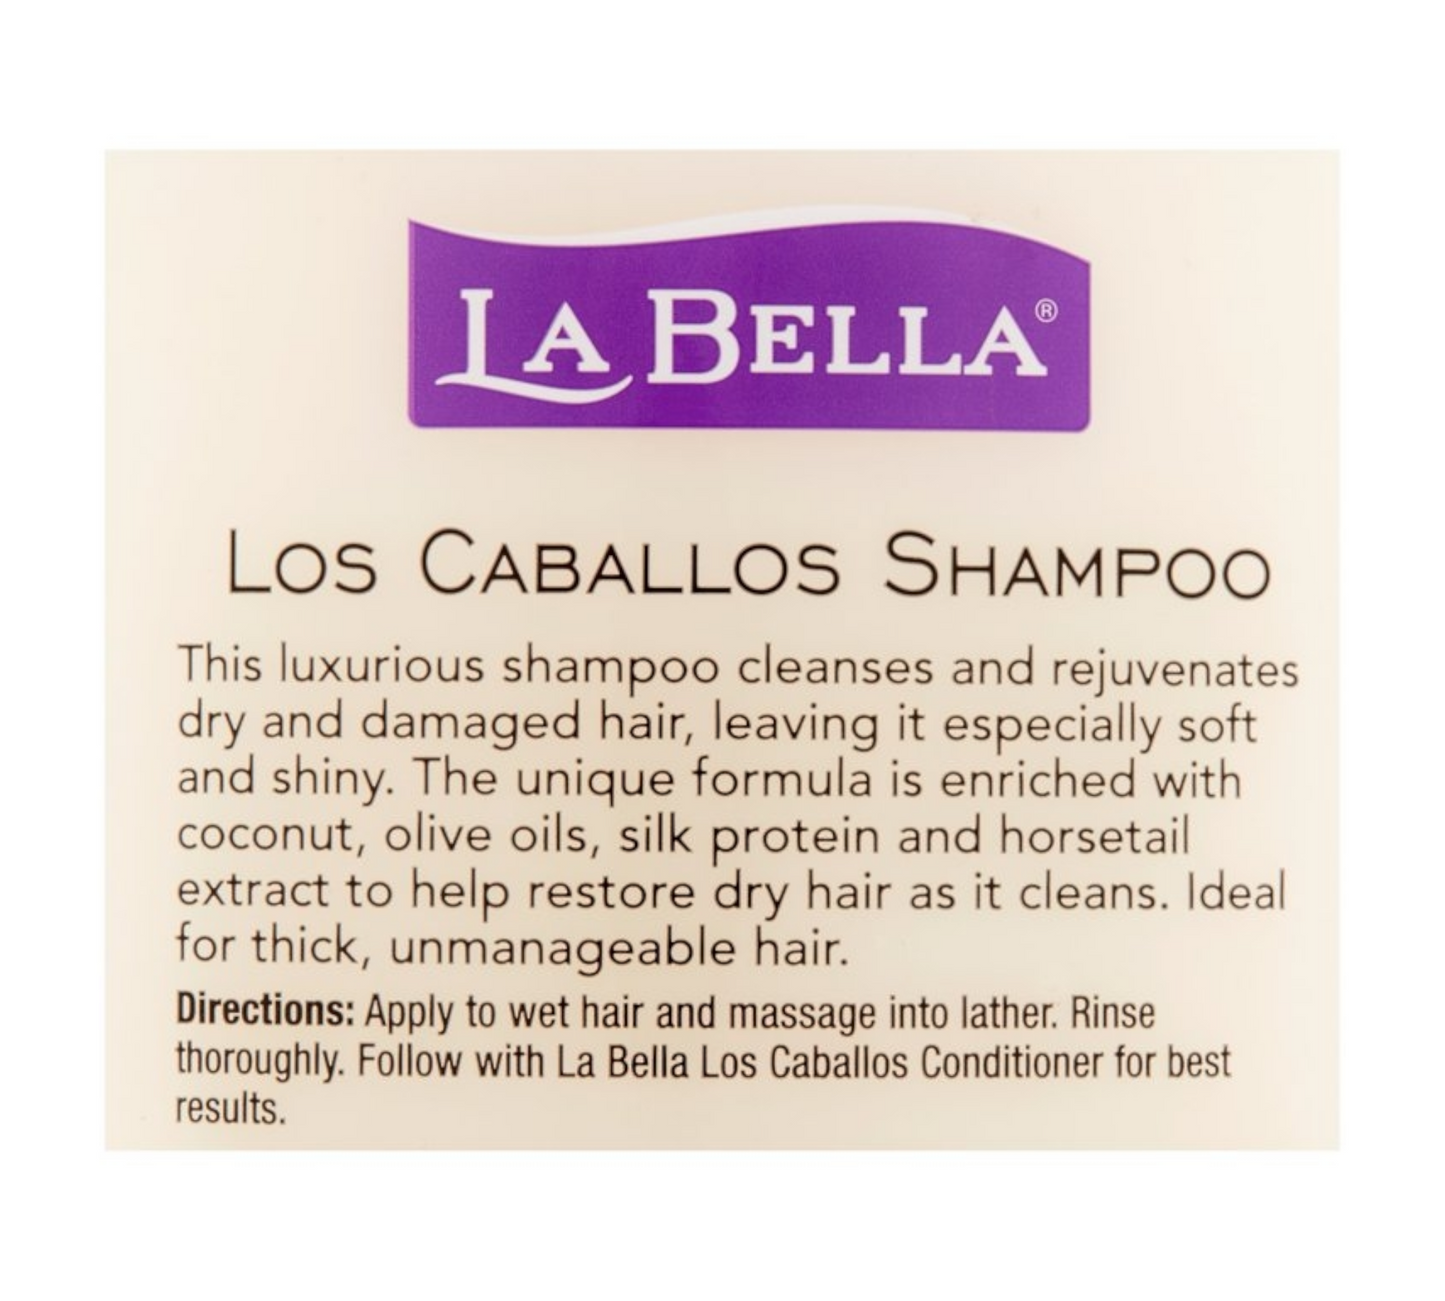 La Bella Cupid Beauty Supplies Shampoo La Bella Los Caballos Shampoo, 25.4 Oz